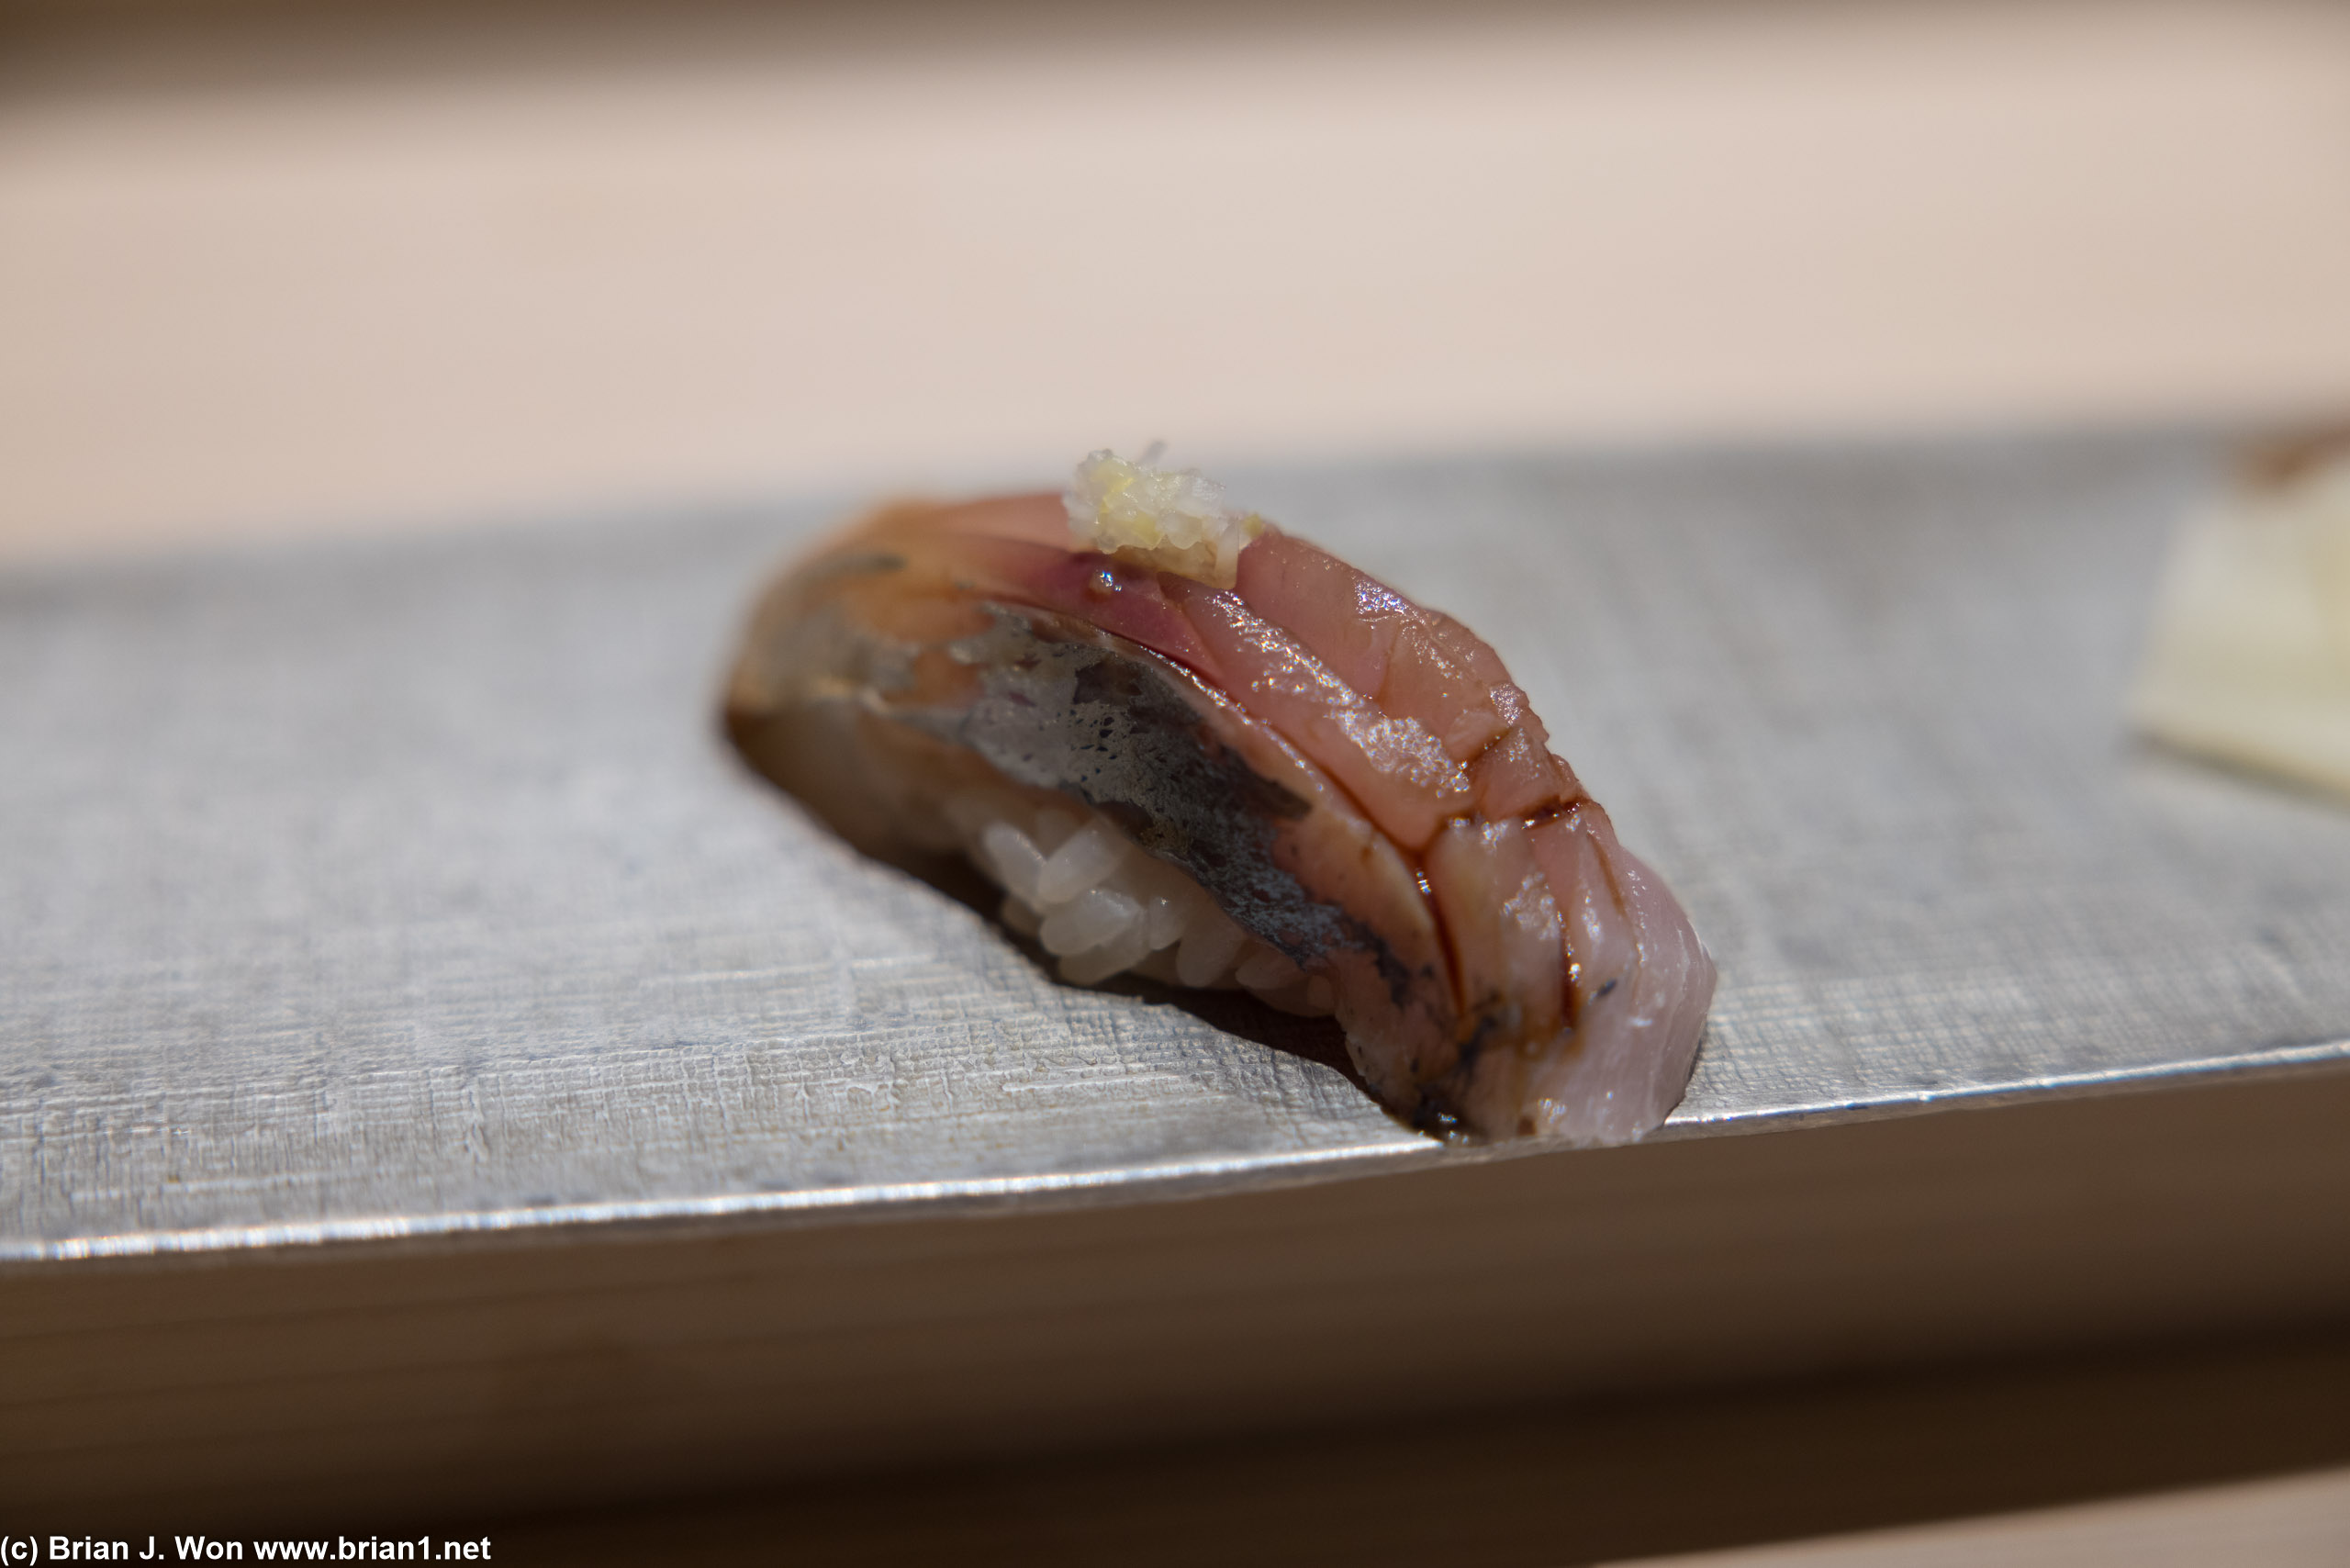 Aji was amazing (Japanese horse mackerel).